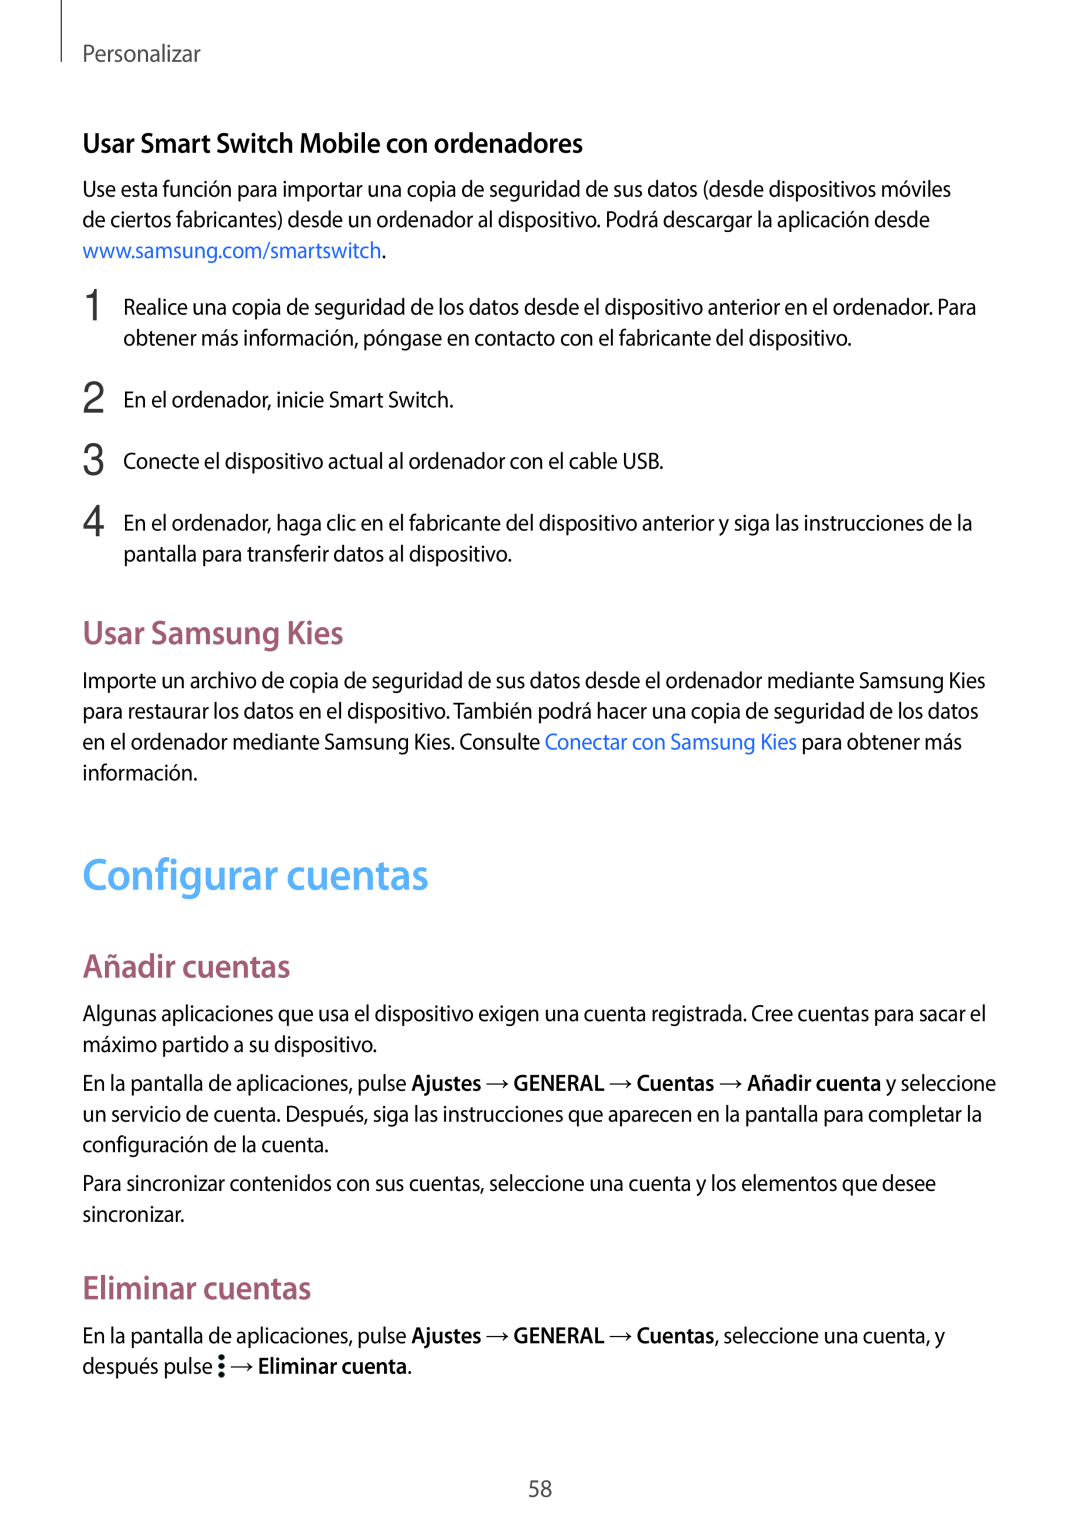 Samsung SM-T800NTSAPHE manual Configurar cuentas, Usar Samsung Kies, Añadir cuentas, Eliminar cuentas, Personalizar 